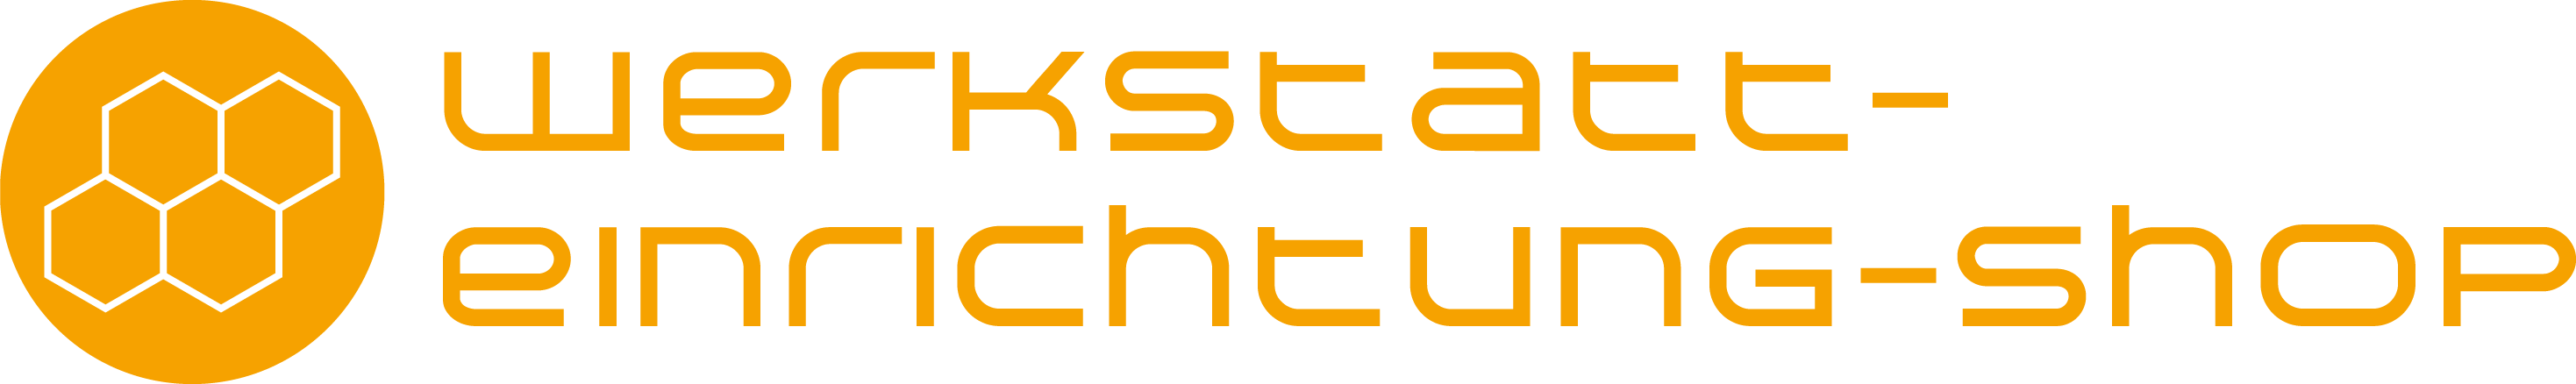 Logo_Werkstatteinrichtung-shop-com_4c